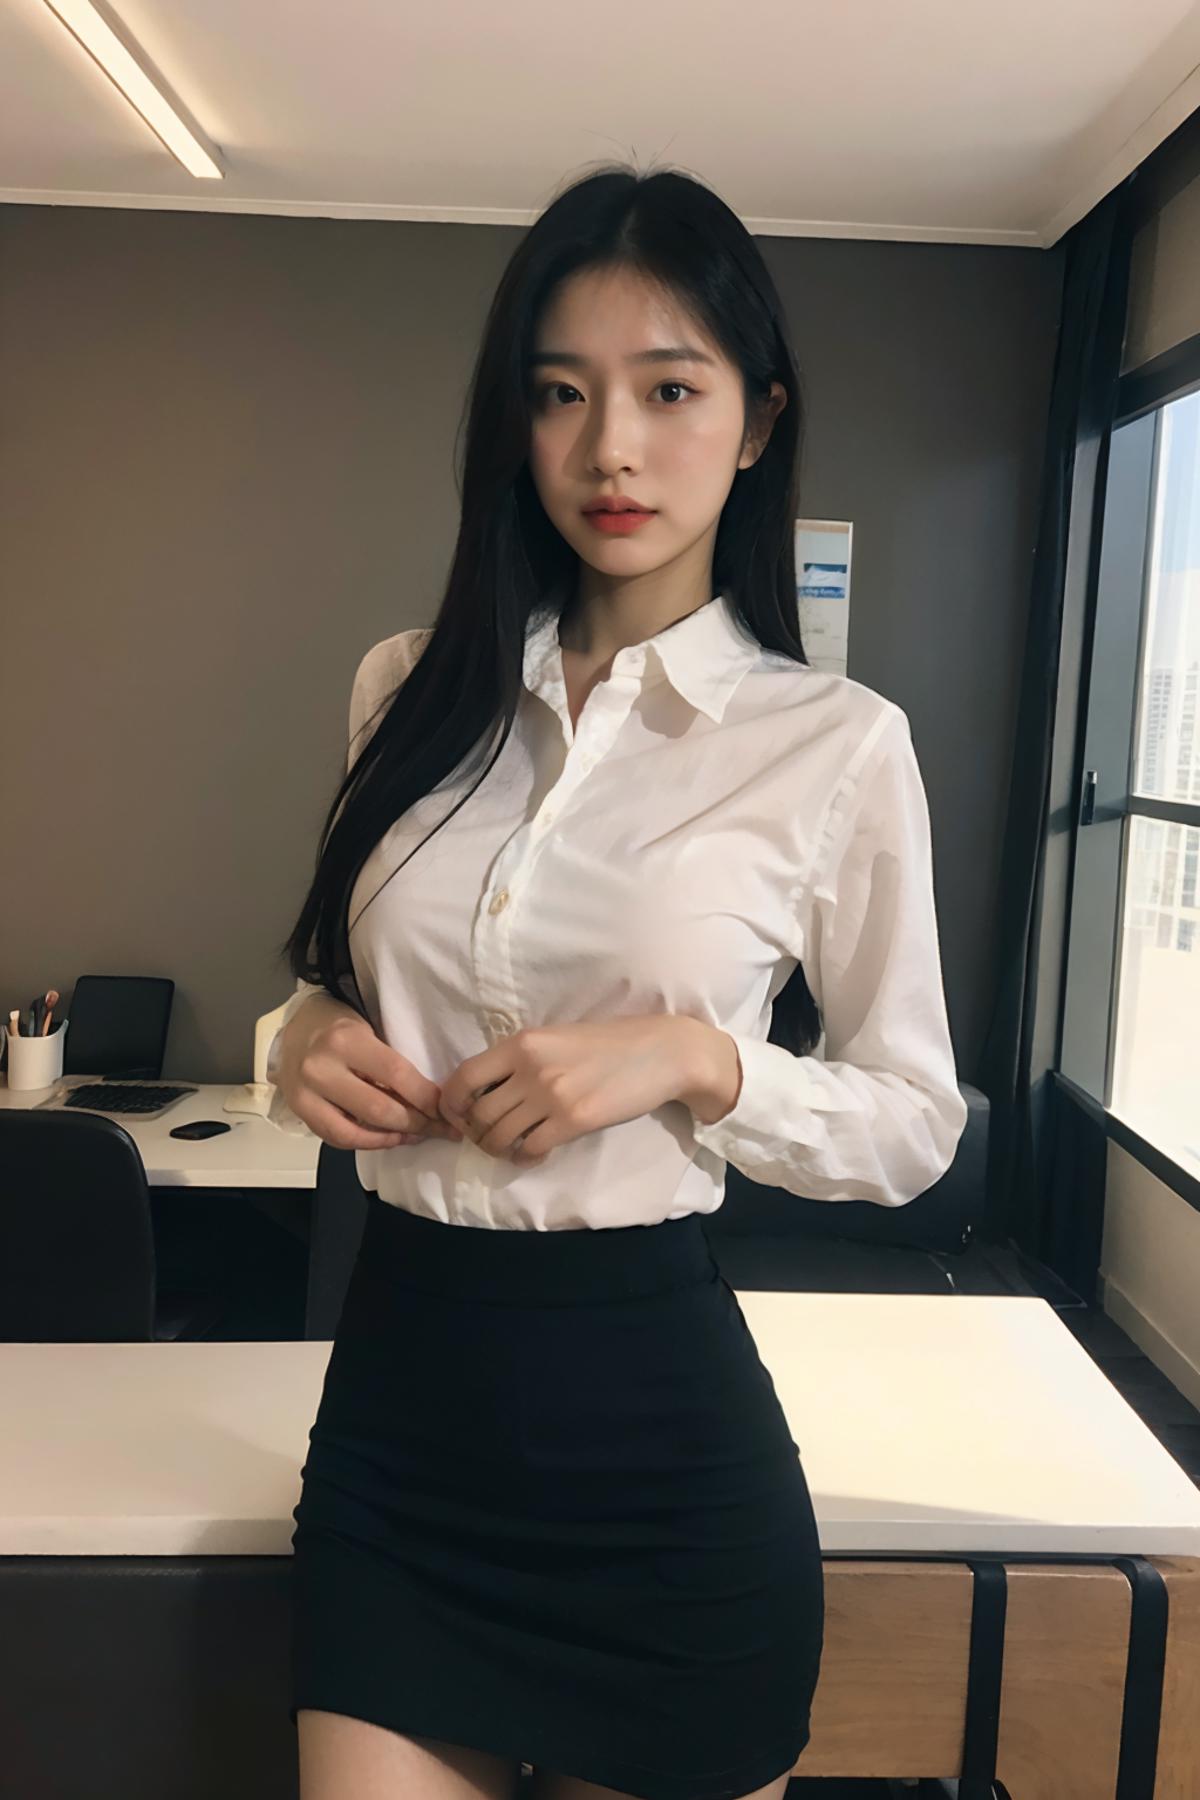 某宝风秘书制服 Sexy Secretary uniform image by G_O_D